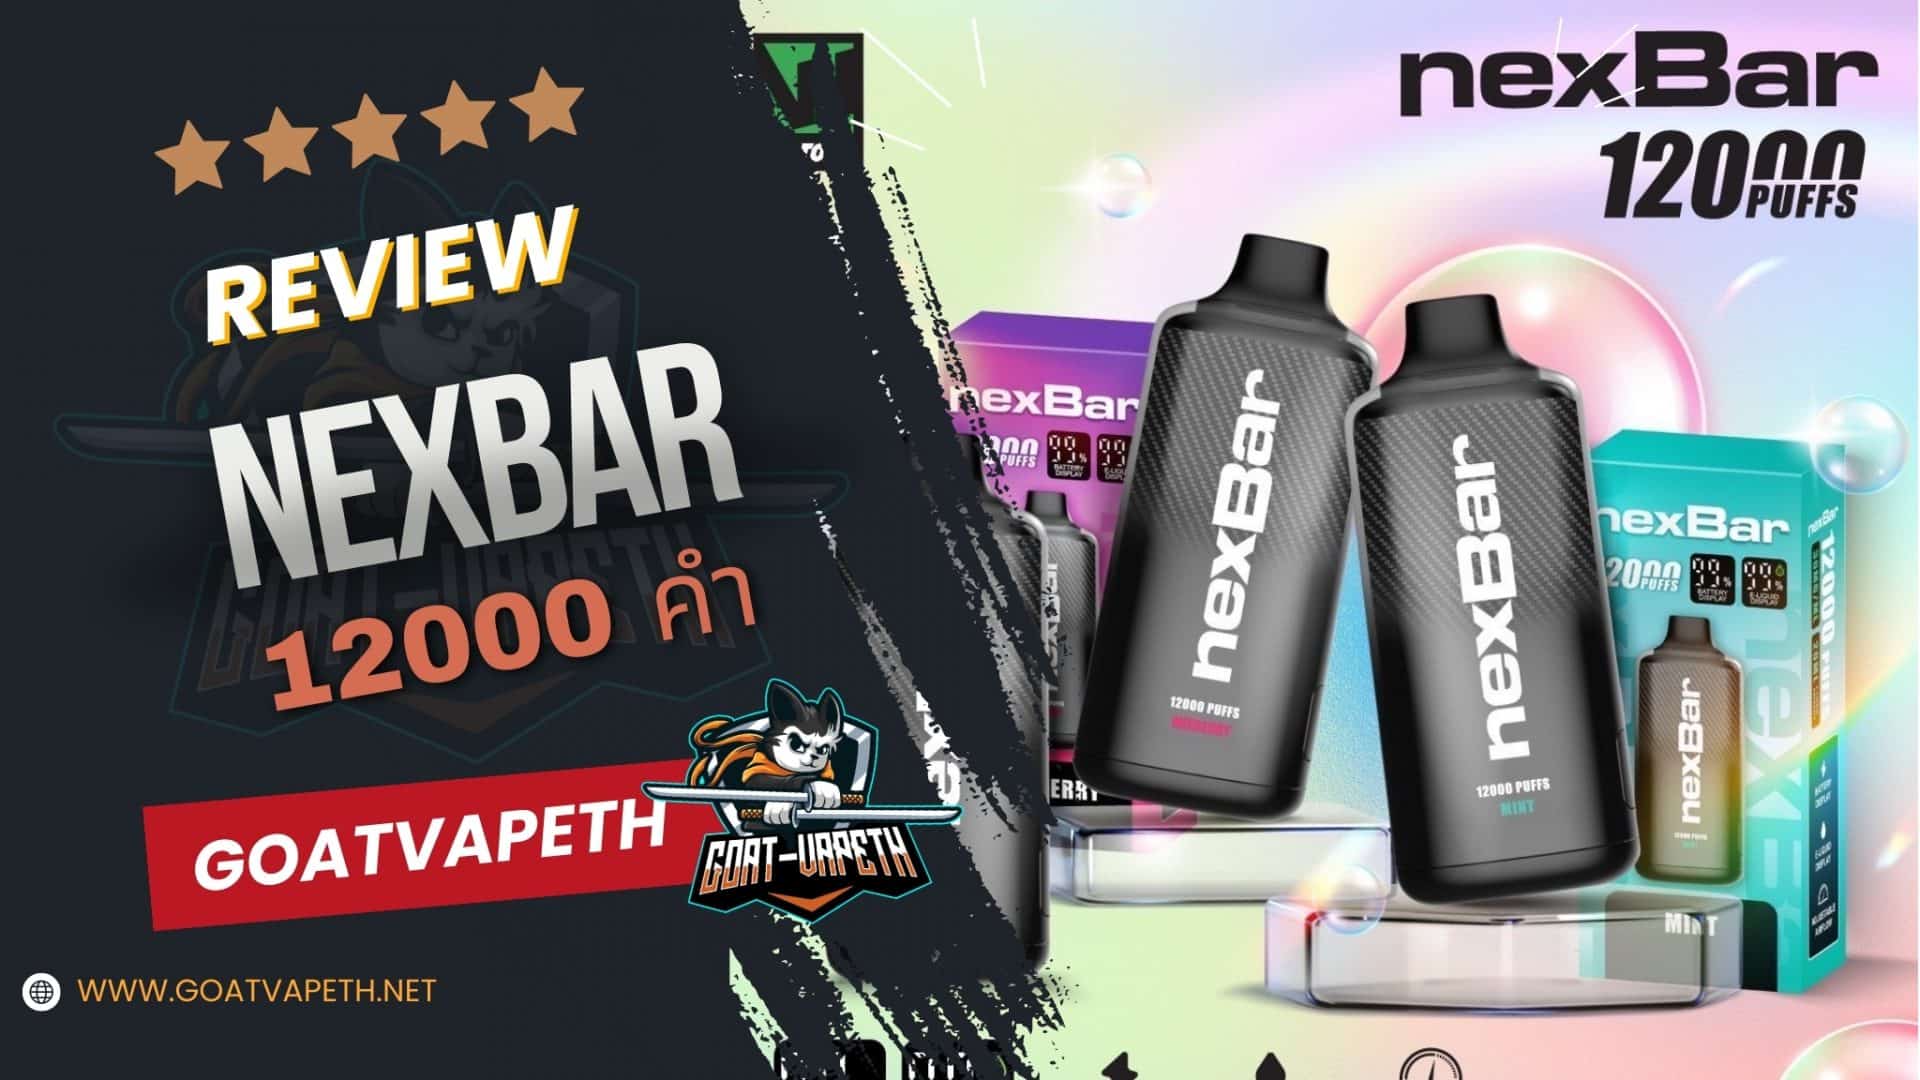 Review Nexbar 12000 Puffs